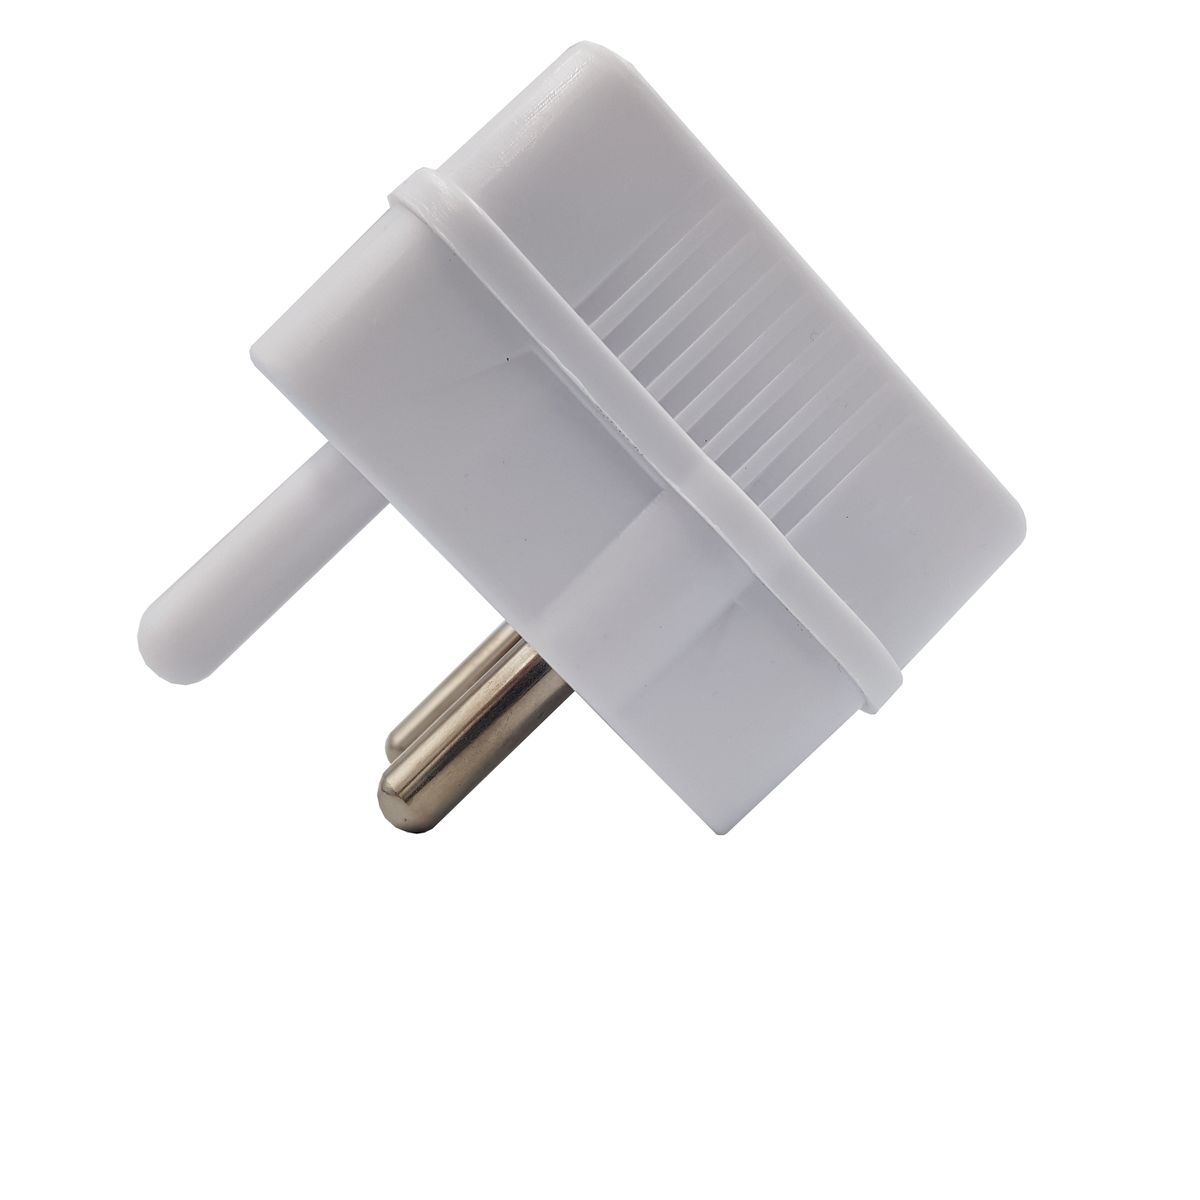 Plug Adaptor: 3 way 3 X 5A 2 pin / Euro Adaptor